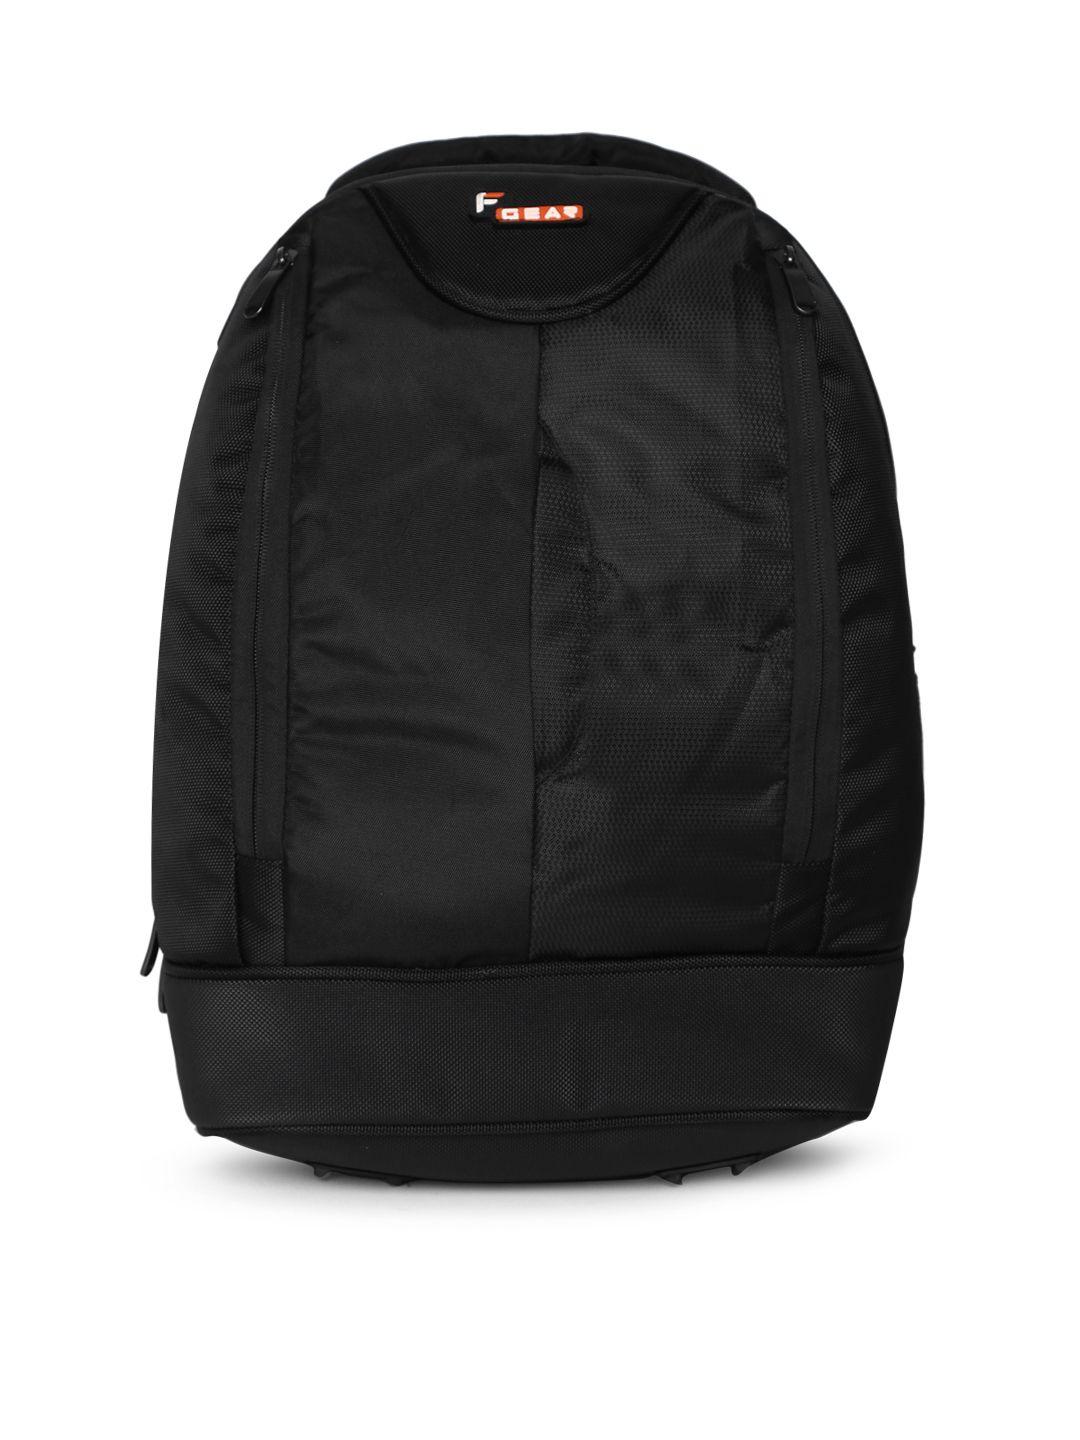 f gear unisex booster v2 black solid backpack